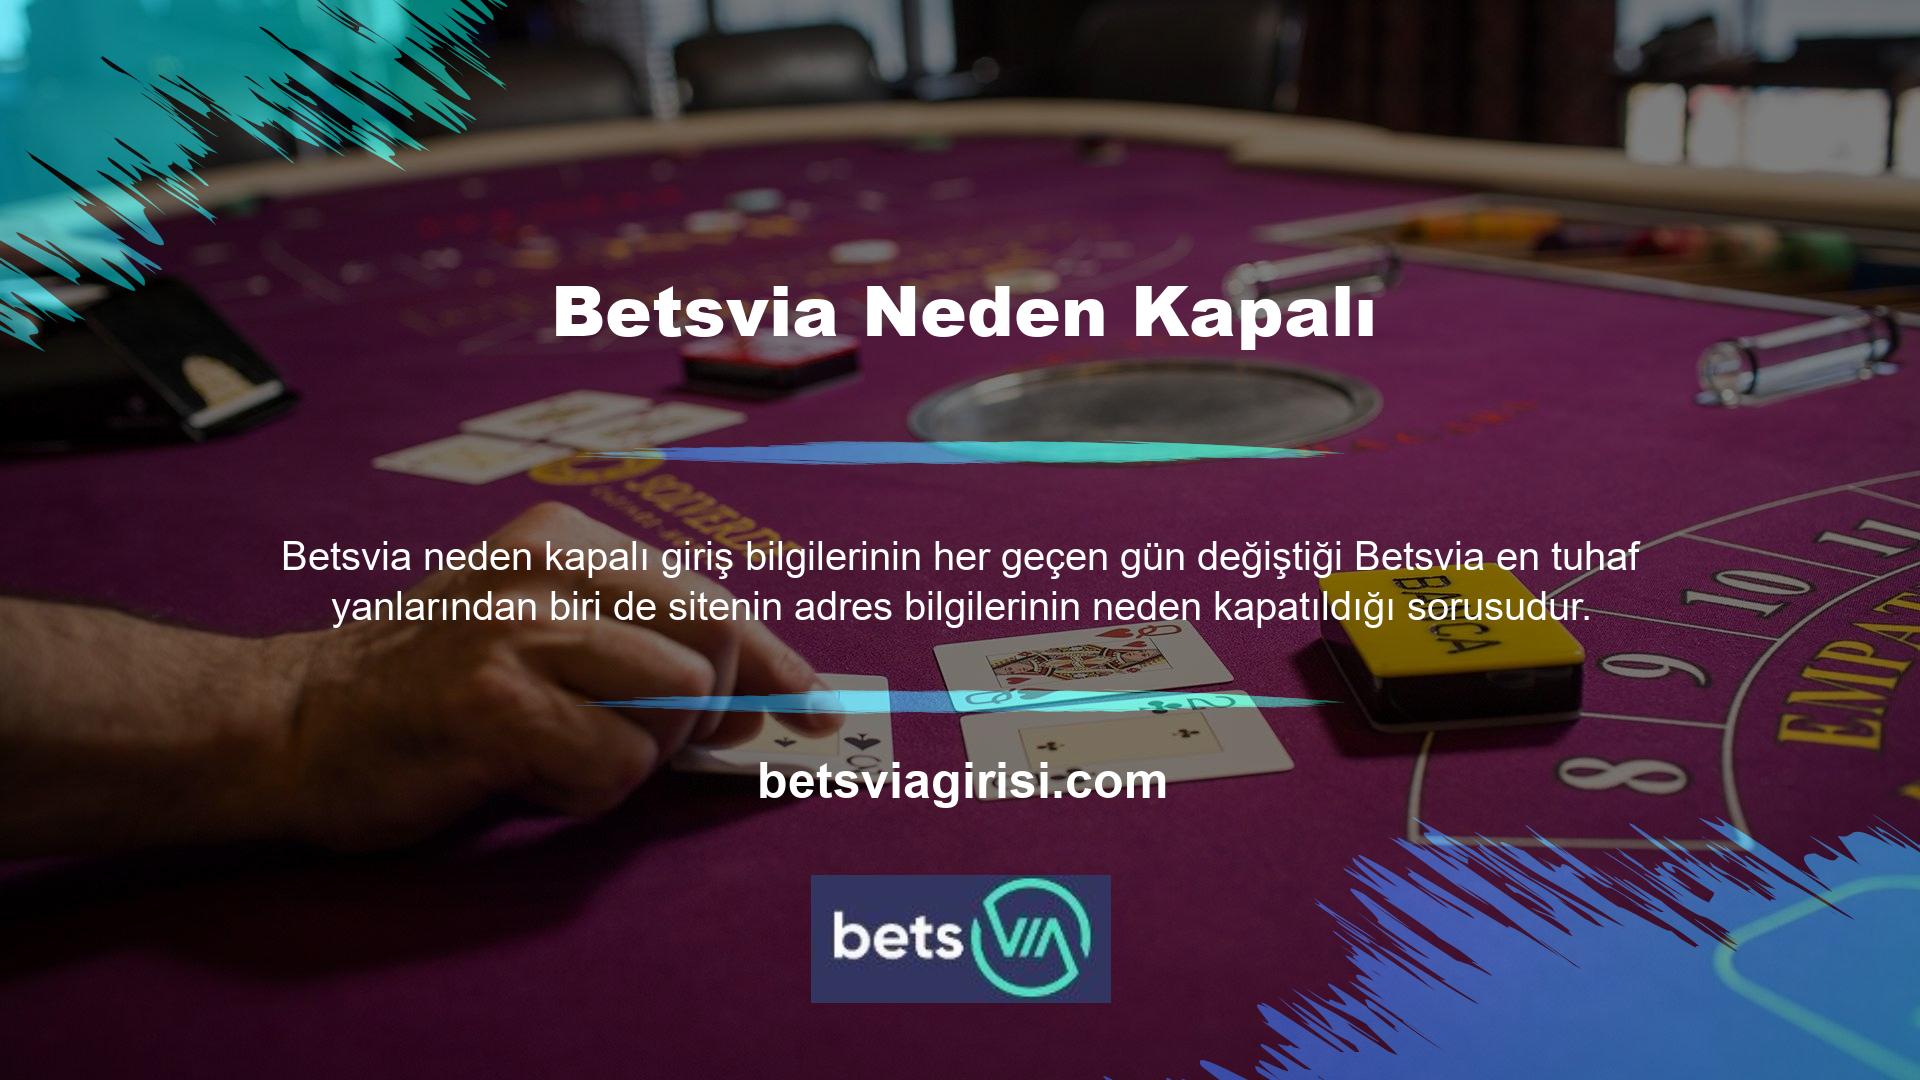 Betsvia, çoğu Avrupa ülkesinde oyunculara yasal olarak casino hizmeti sunmaya devam ediyor ancak Türkiye pazarında böyle bir fırsat yoktu